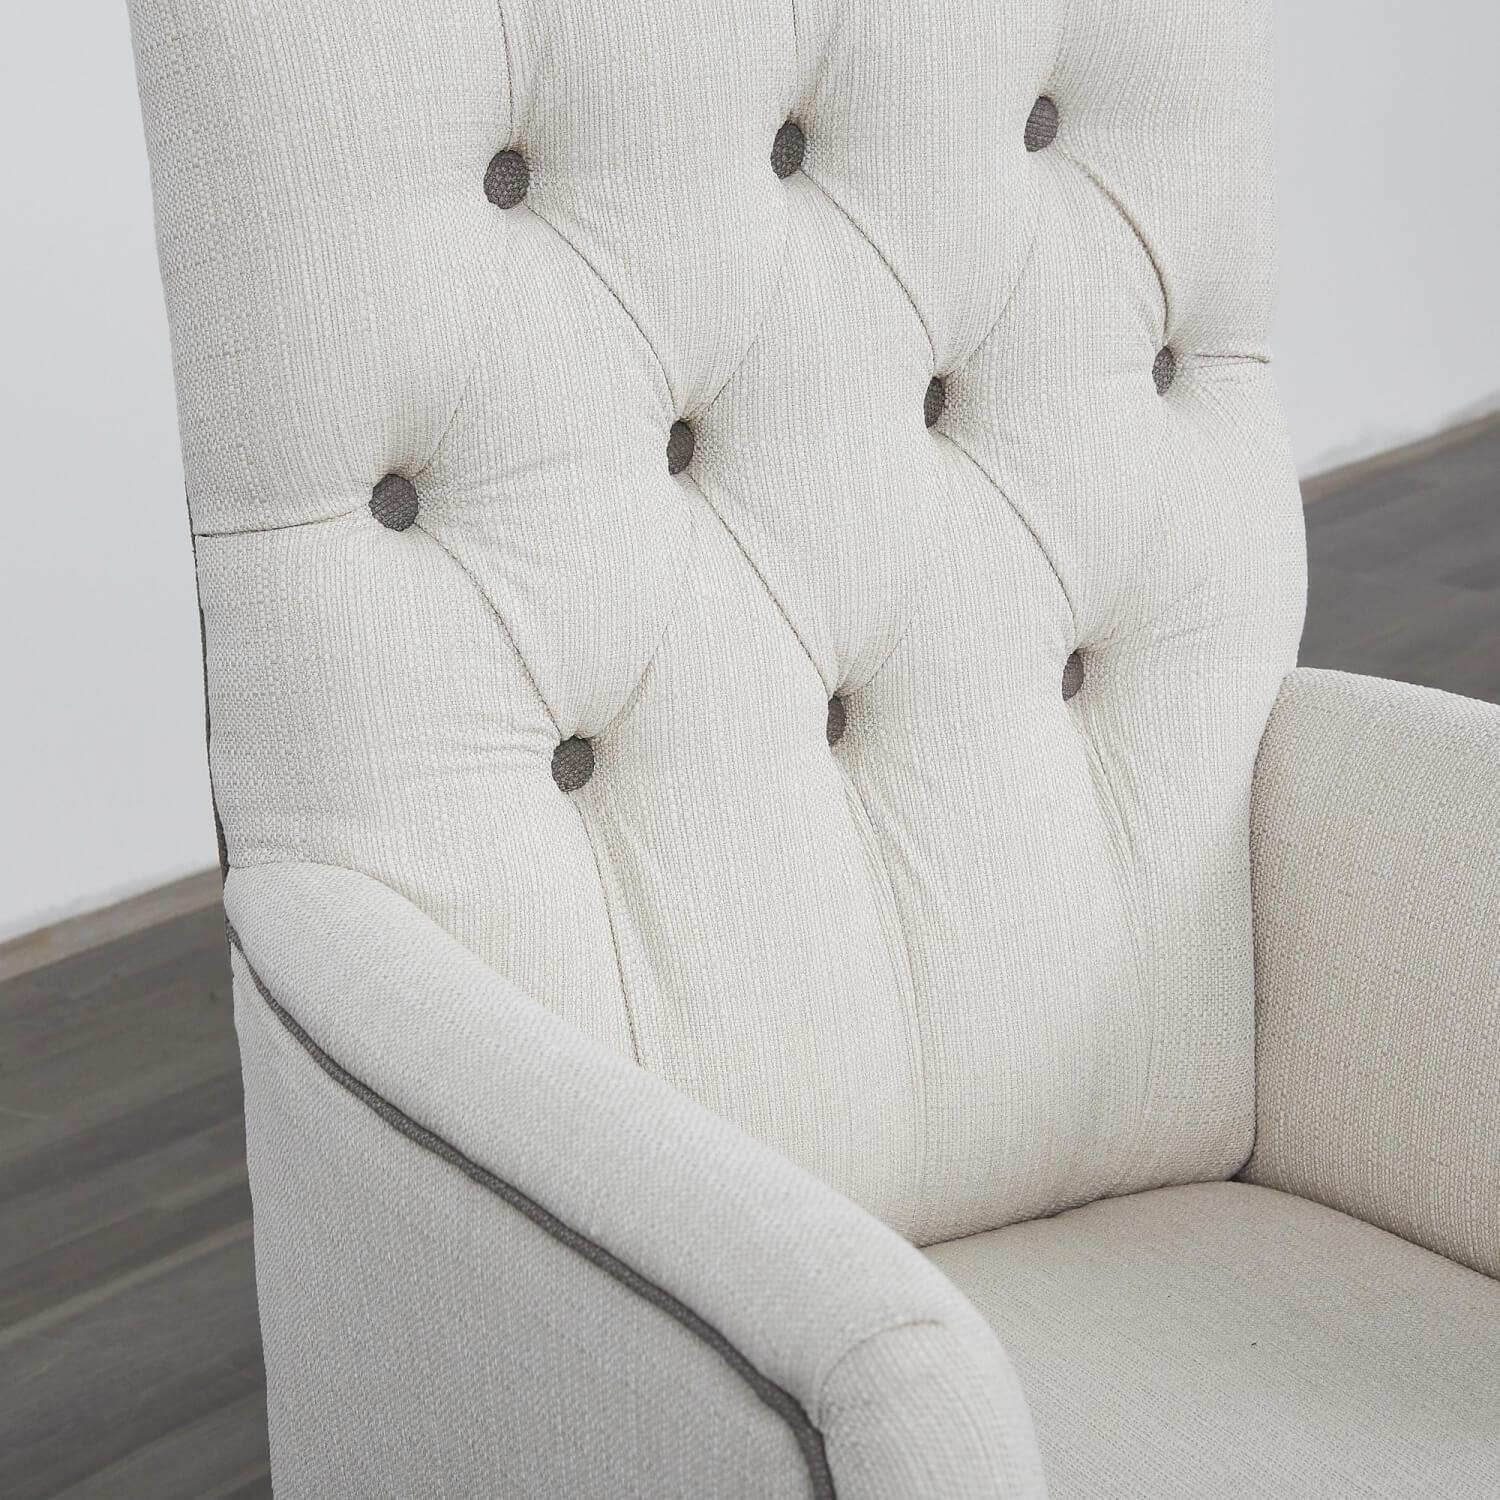 Sessel In Chesterfield Stil Musterstoff Weiß Mit Schwarzen Knöpfen Gestell Holz